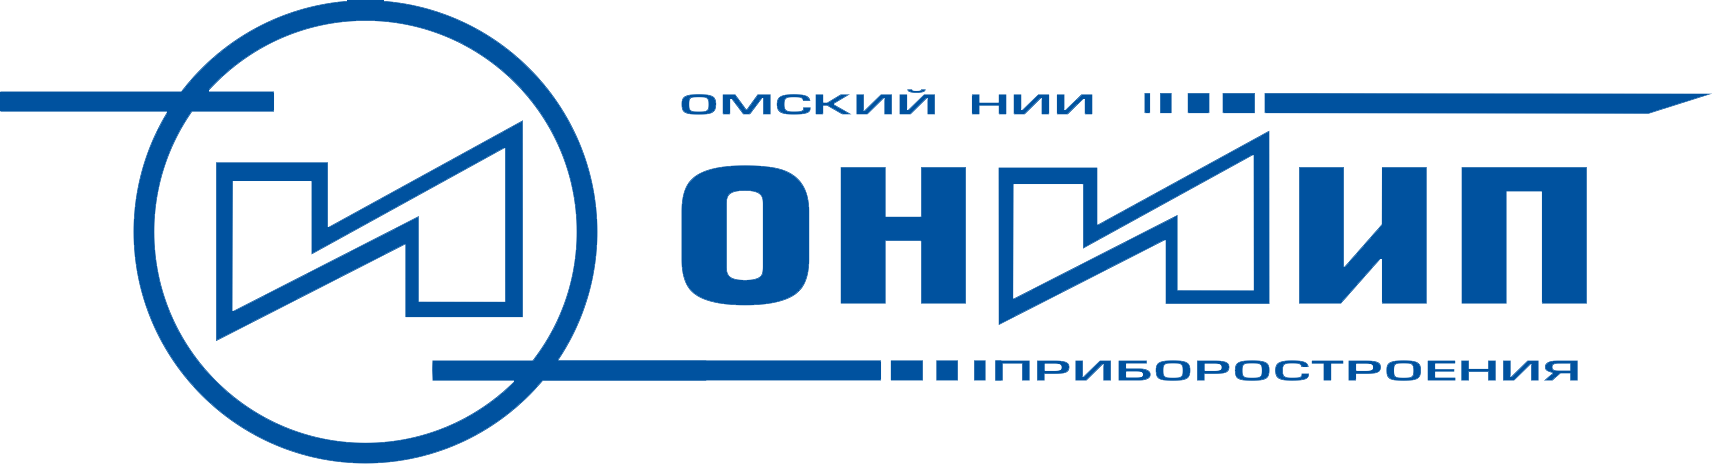 Ао ниип. Логотип ОНИИП Омск. Омский научно-исследовательский институт приборостроения. АО «Омский научно-исследовательский институт логотип.